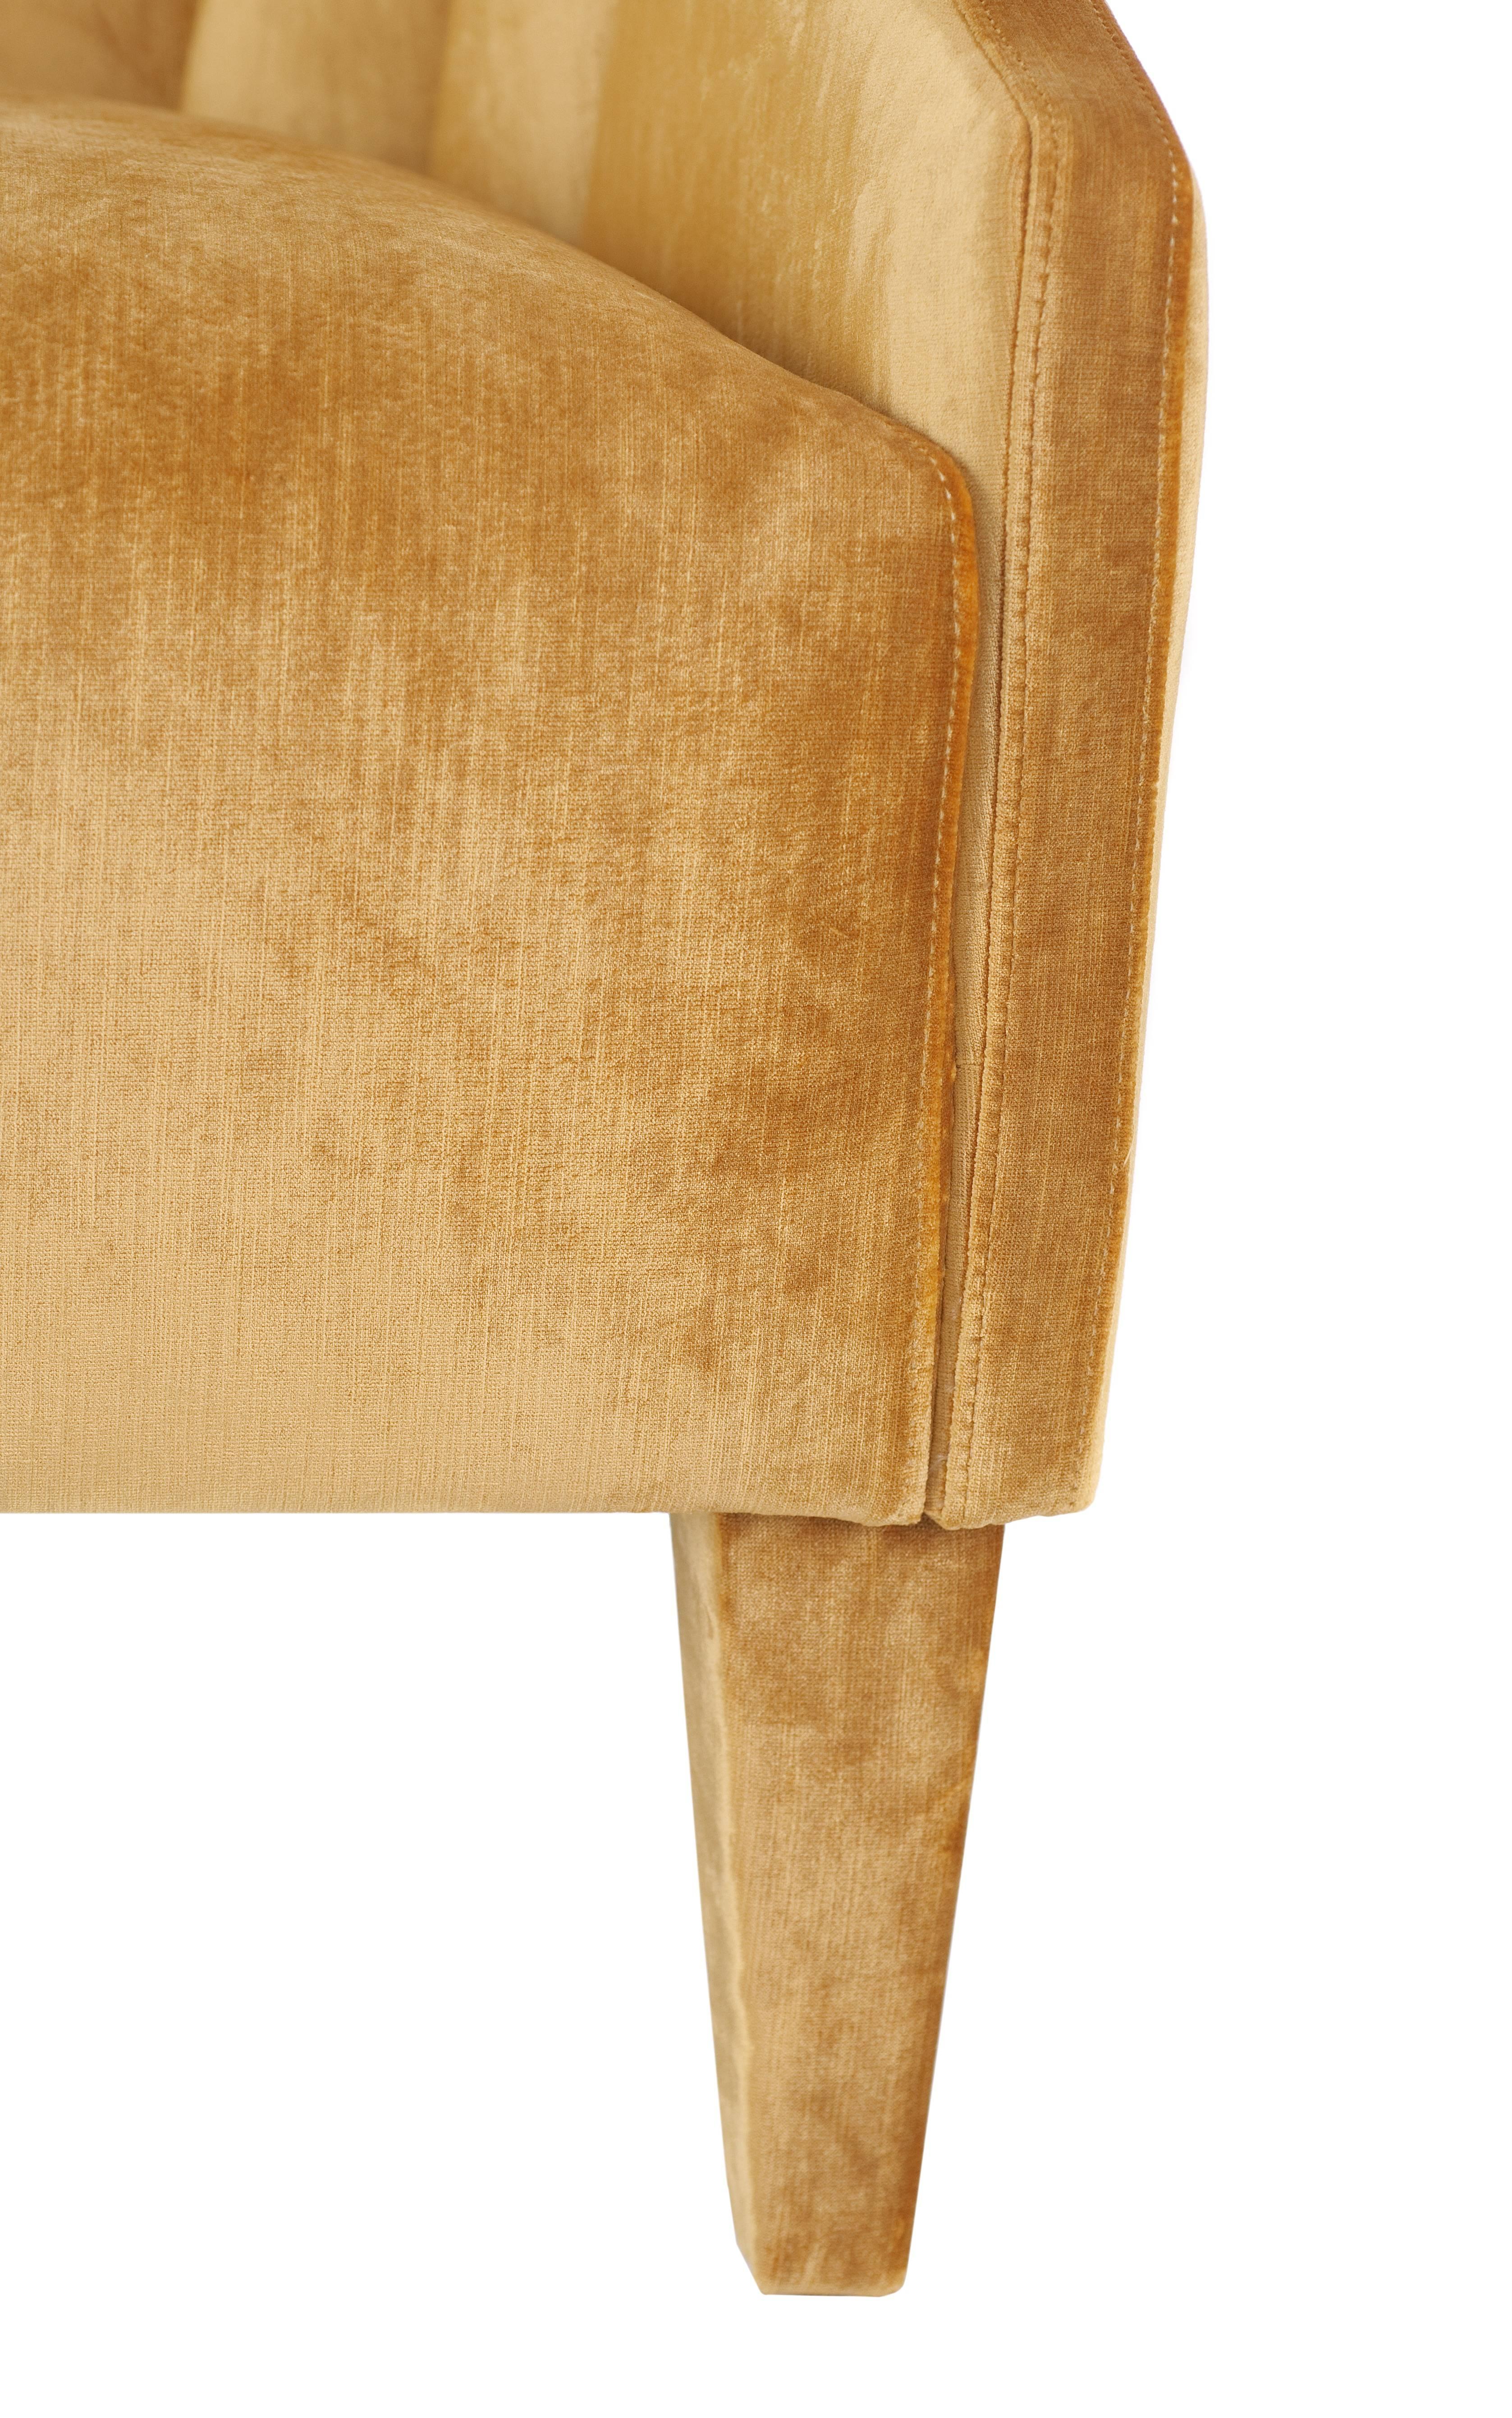 Contemporary European Modern Aspen Club Chair Armchair For Sale